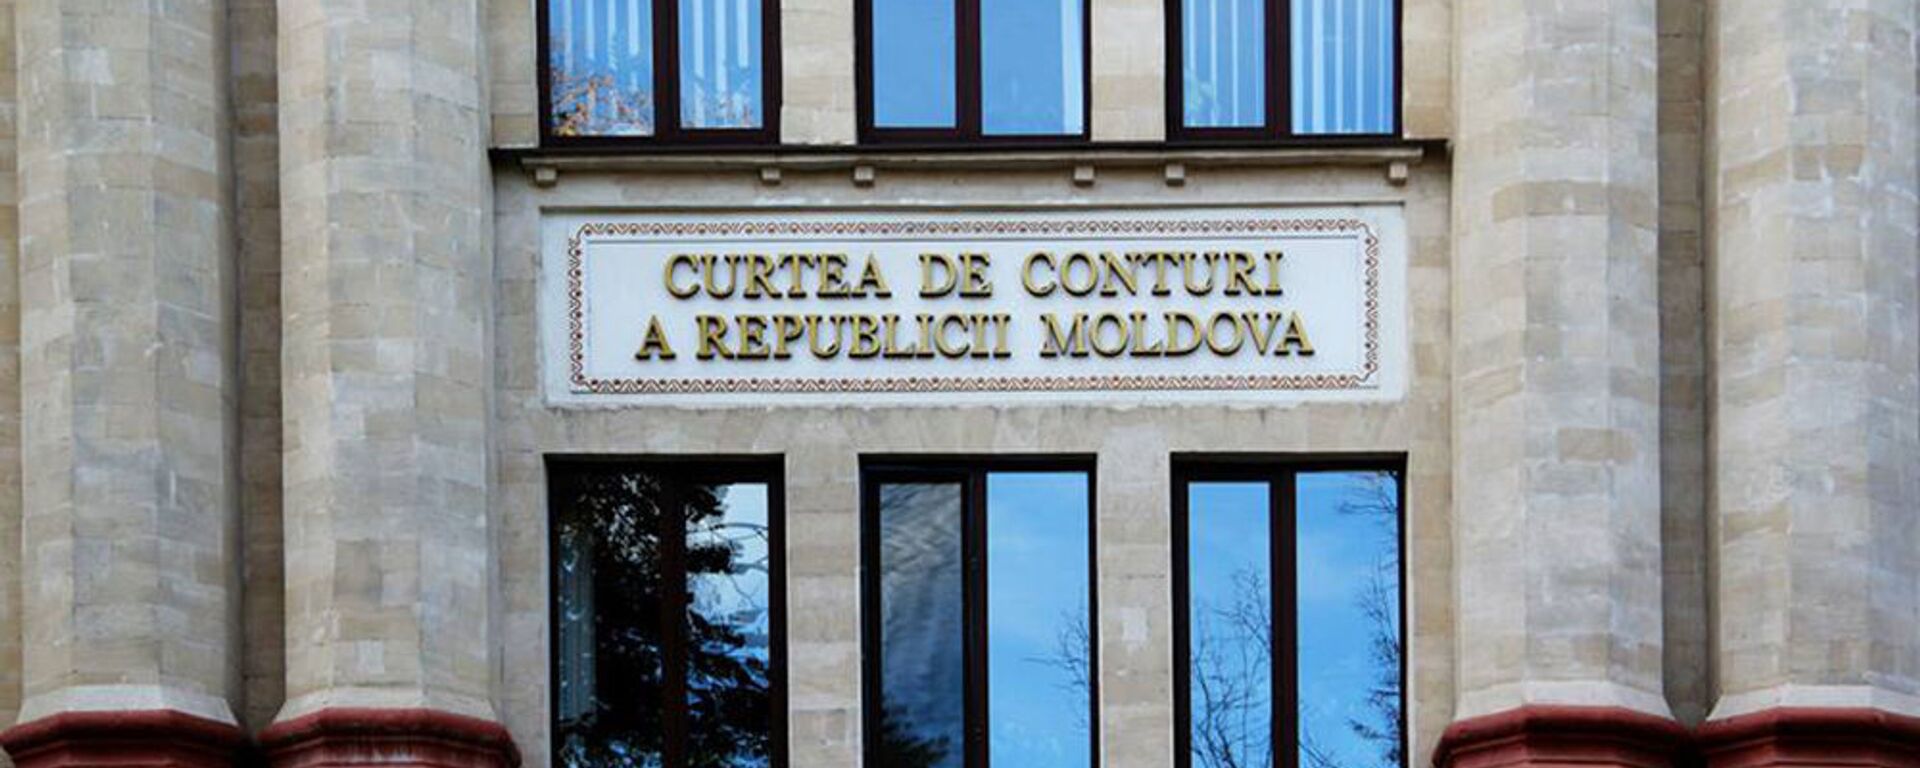 Curtea de Conturi a Republicii Moldova - Sputnik Молдова, 1920, 15.07.2021